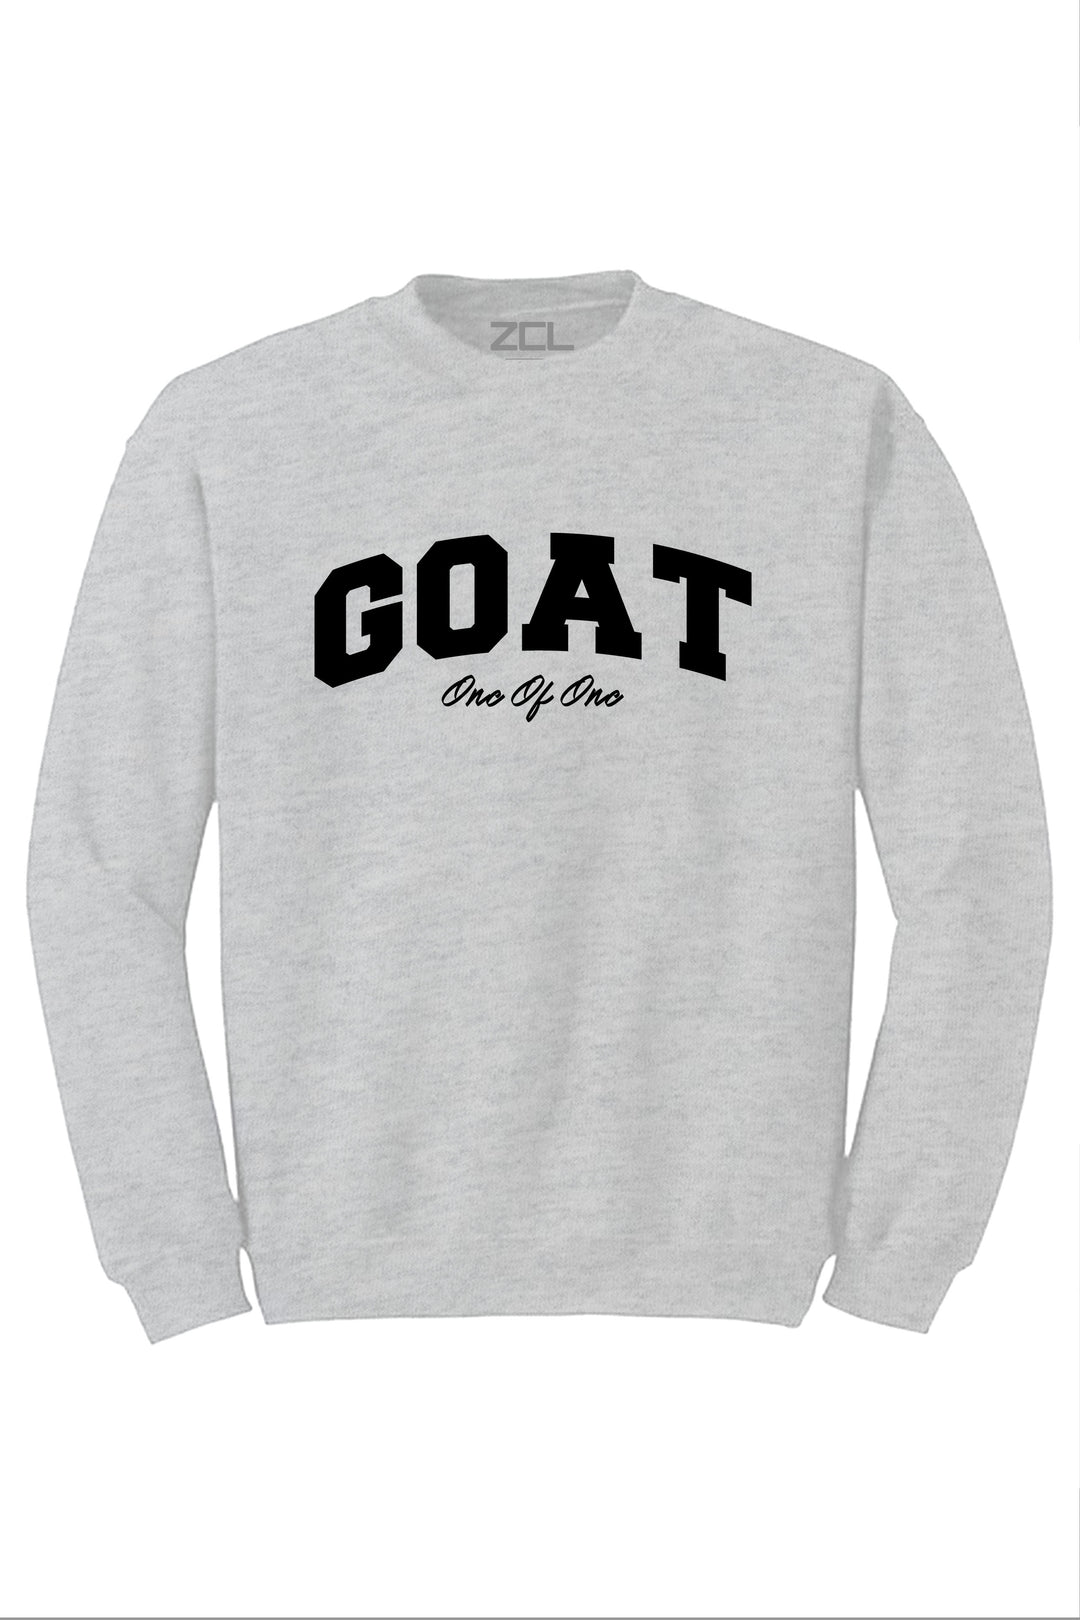 Goat Crewneck Sweatshirt (Black Logo) - Zamage